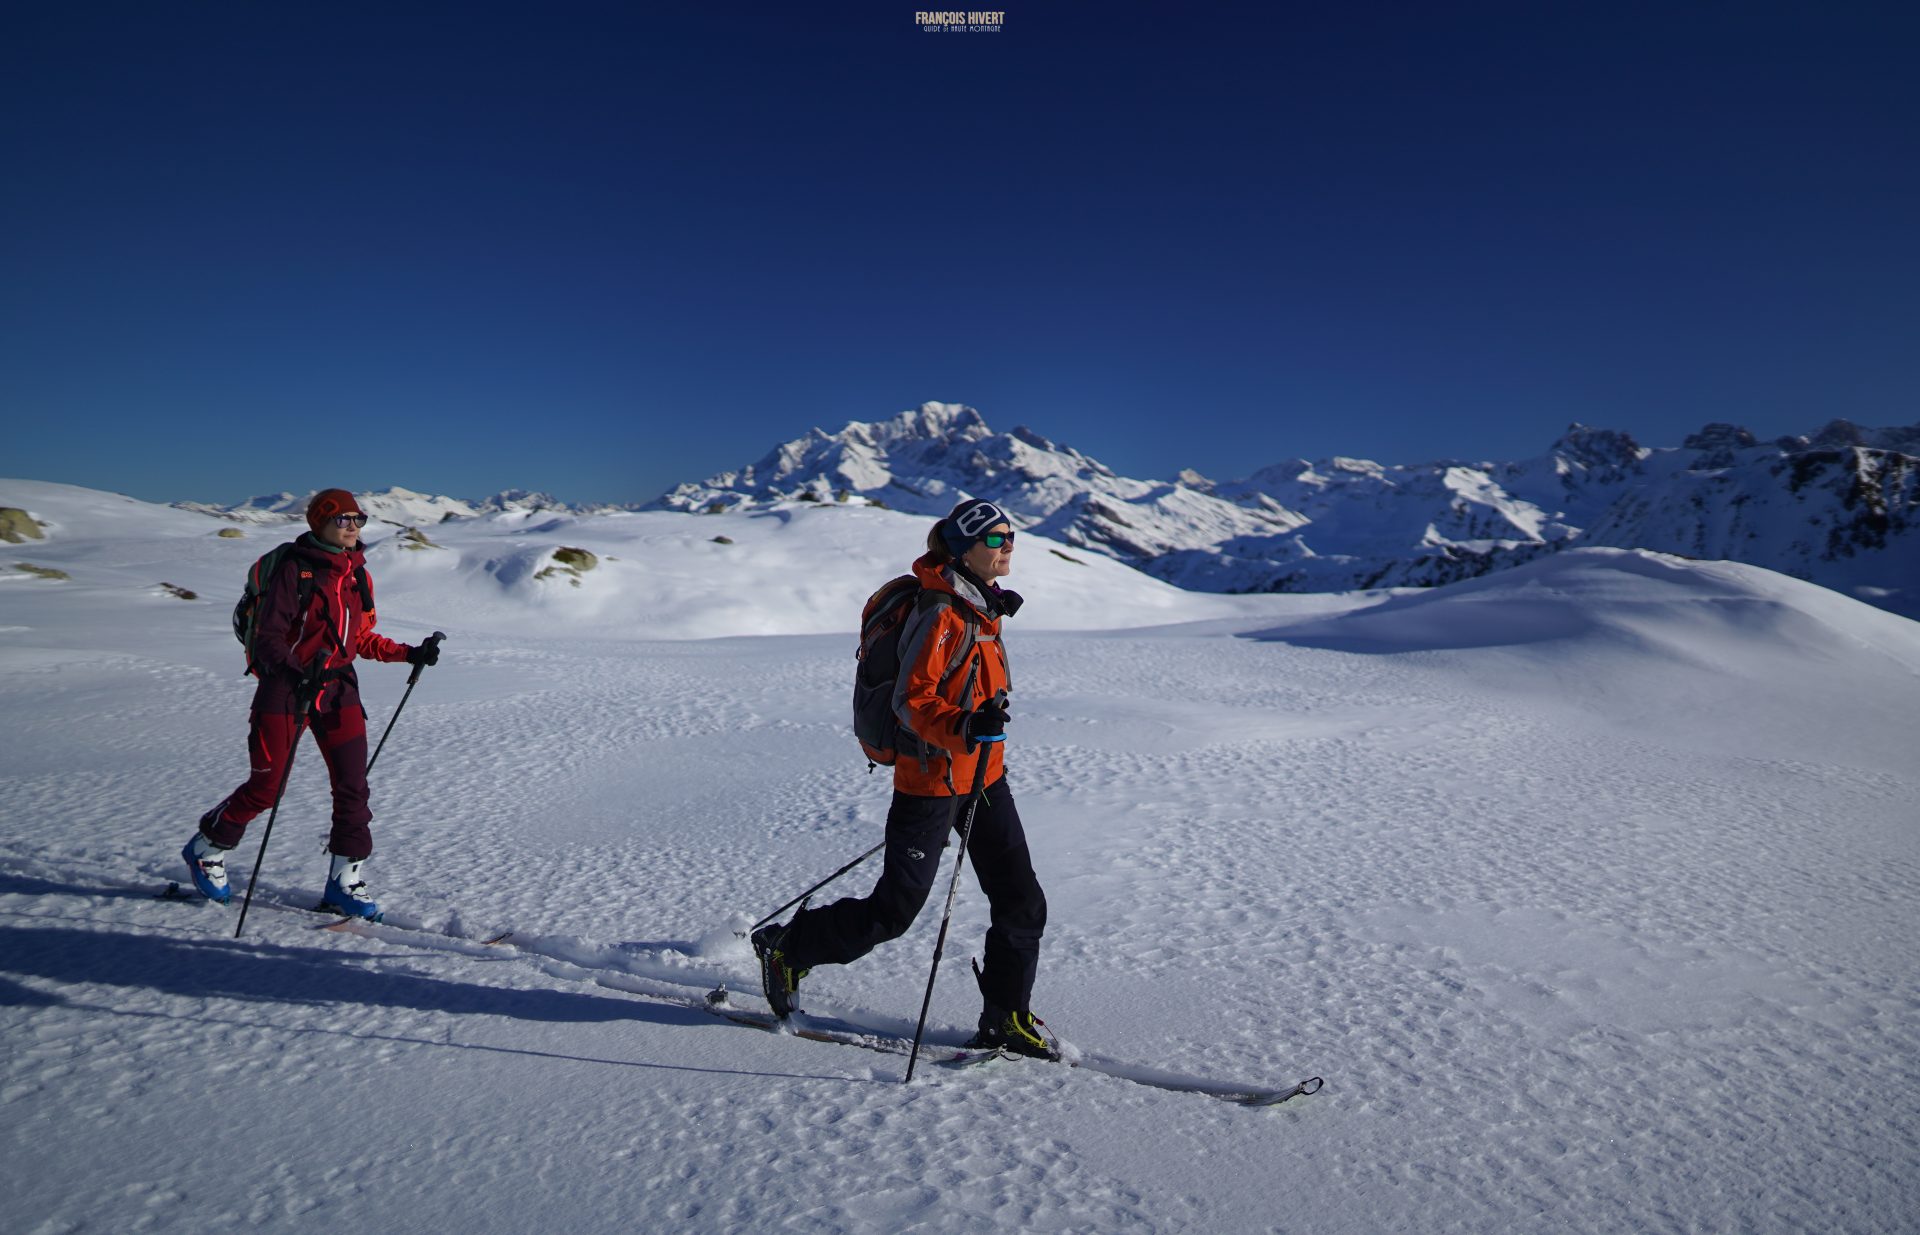 Beaufortain ski de randonnée pointe du Dard ski touring guide de haute montagne Grand Mont